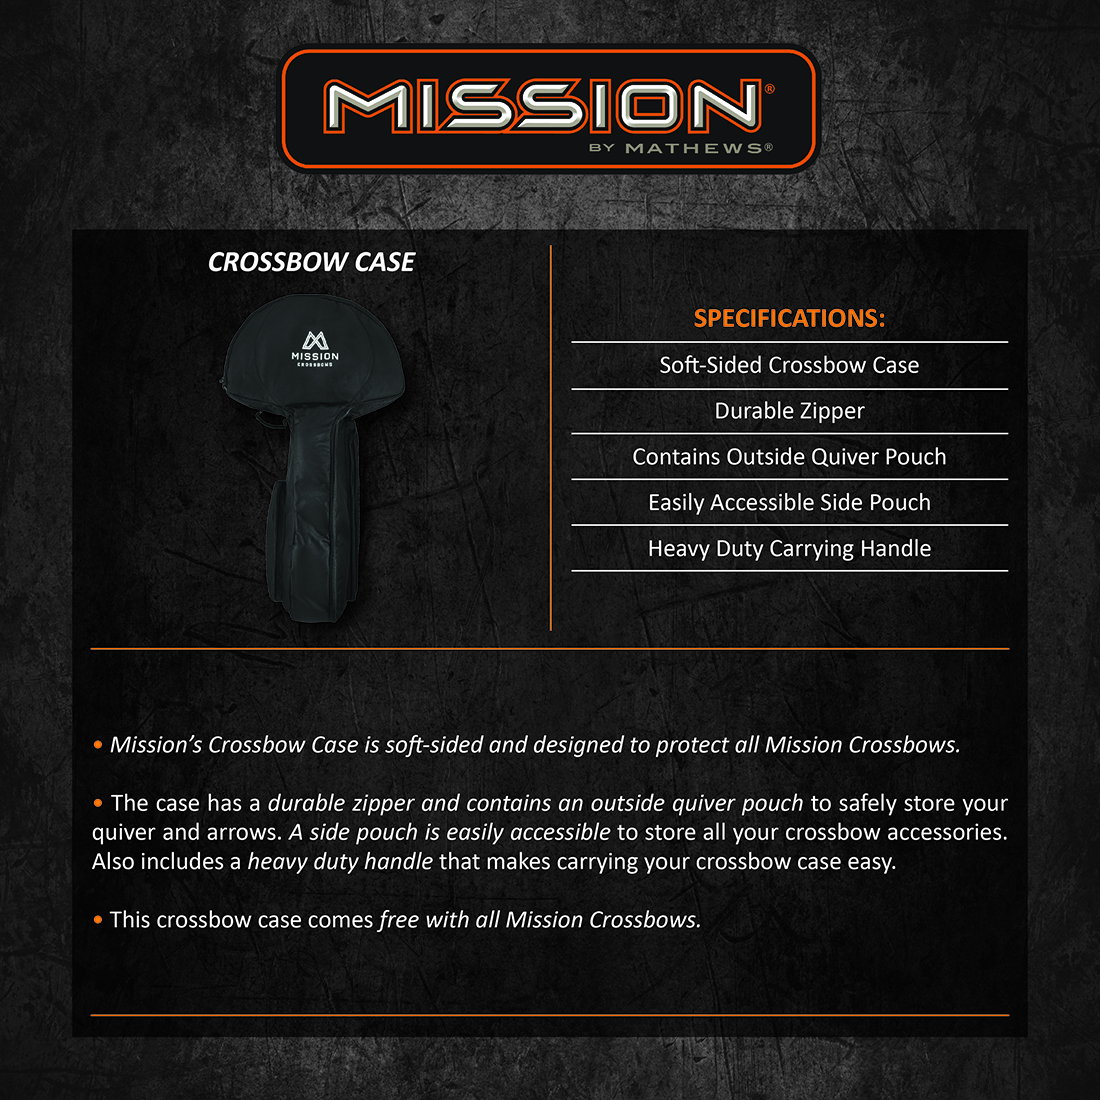 Mission_Crossbow_Case_Product_Description